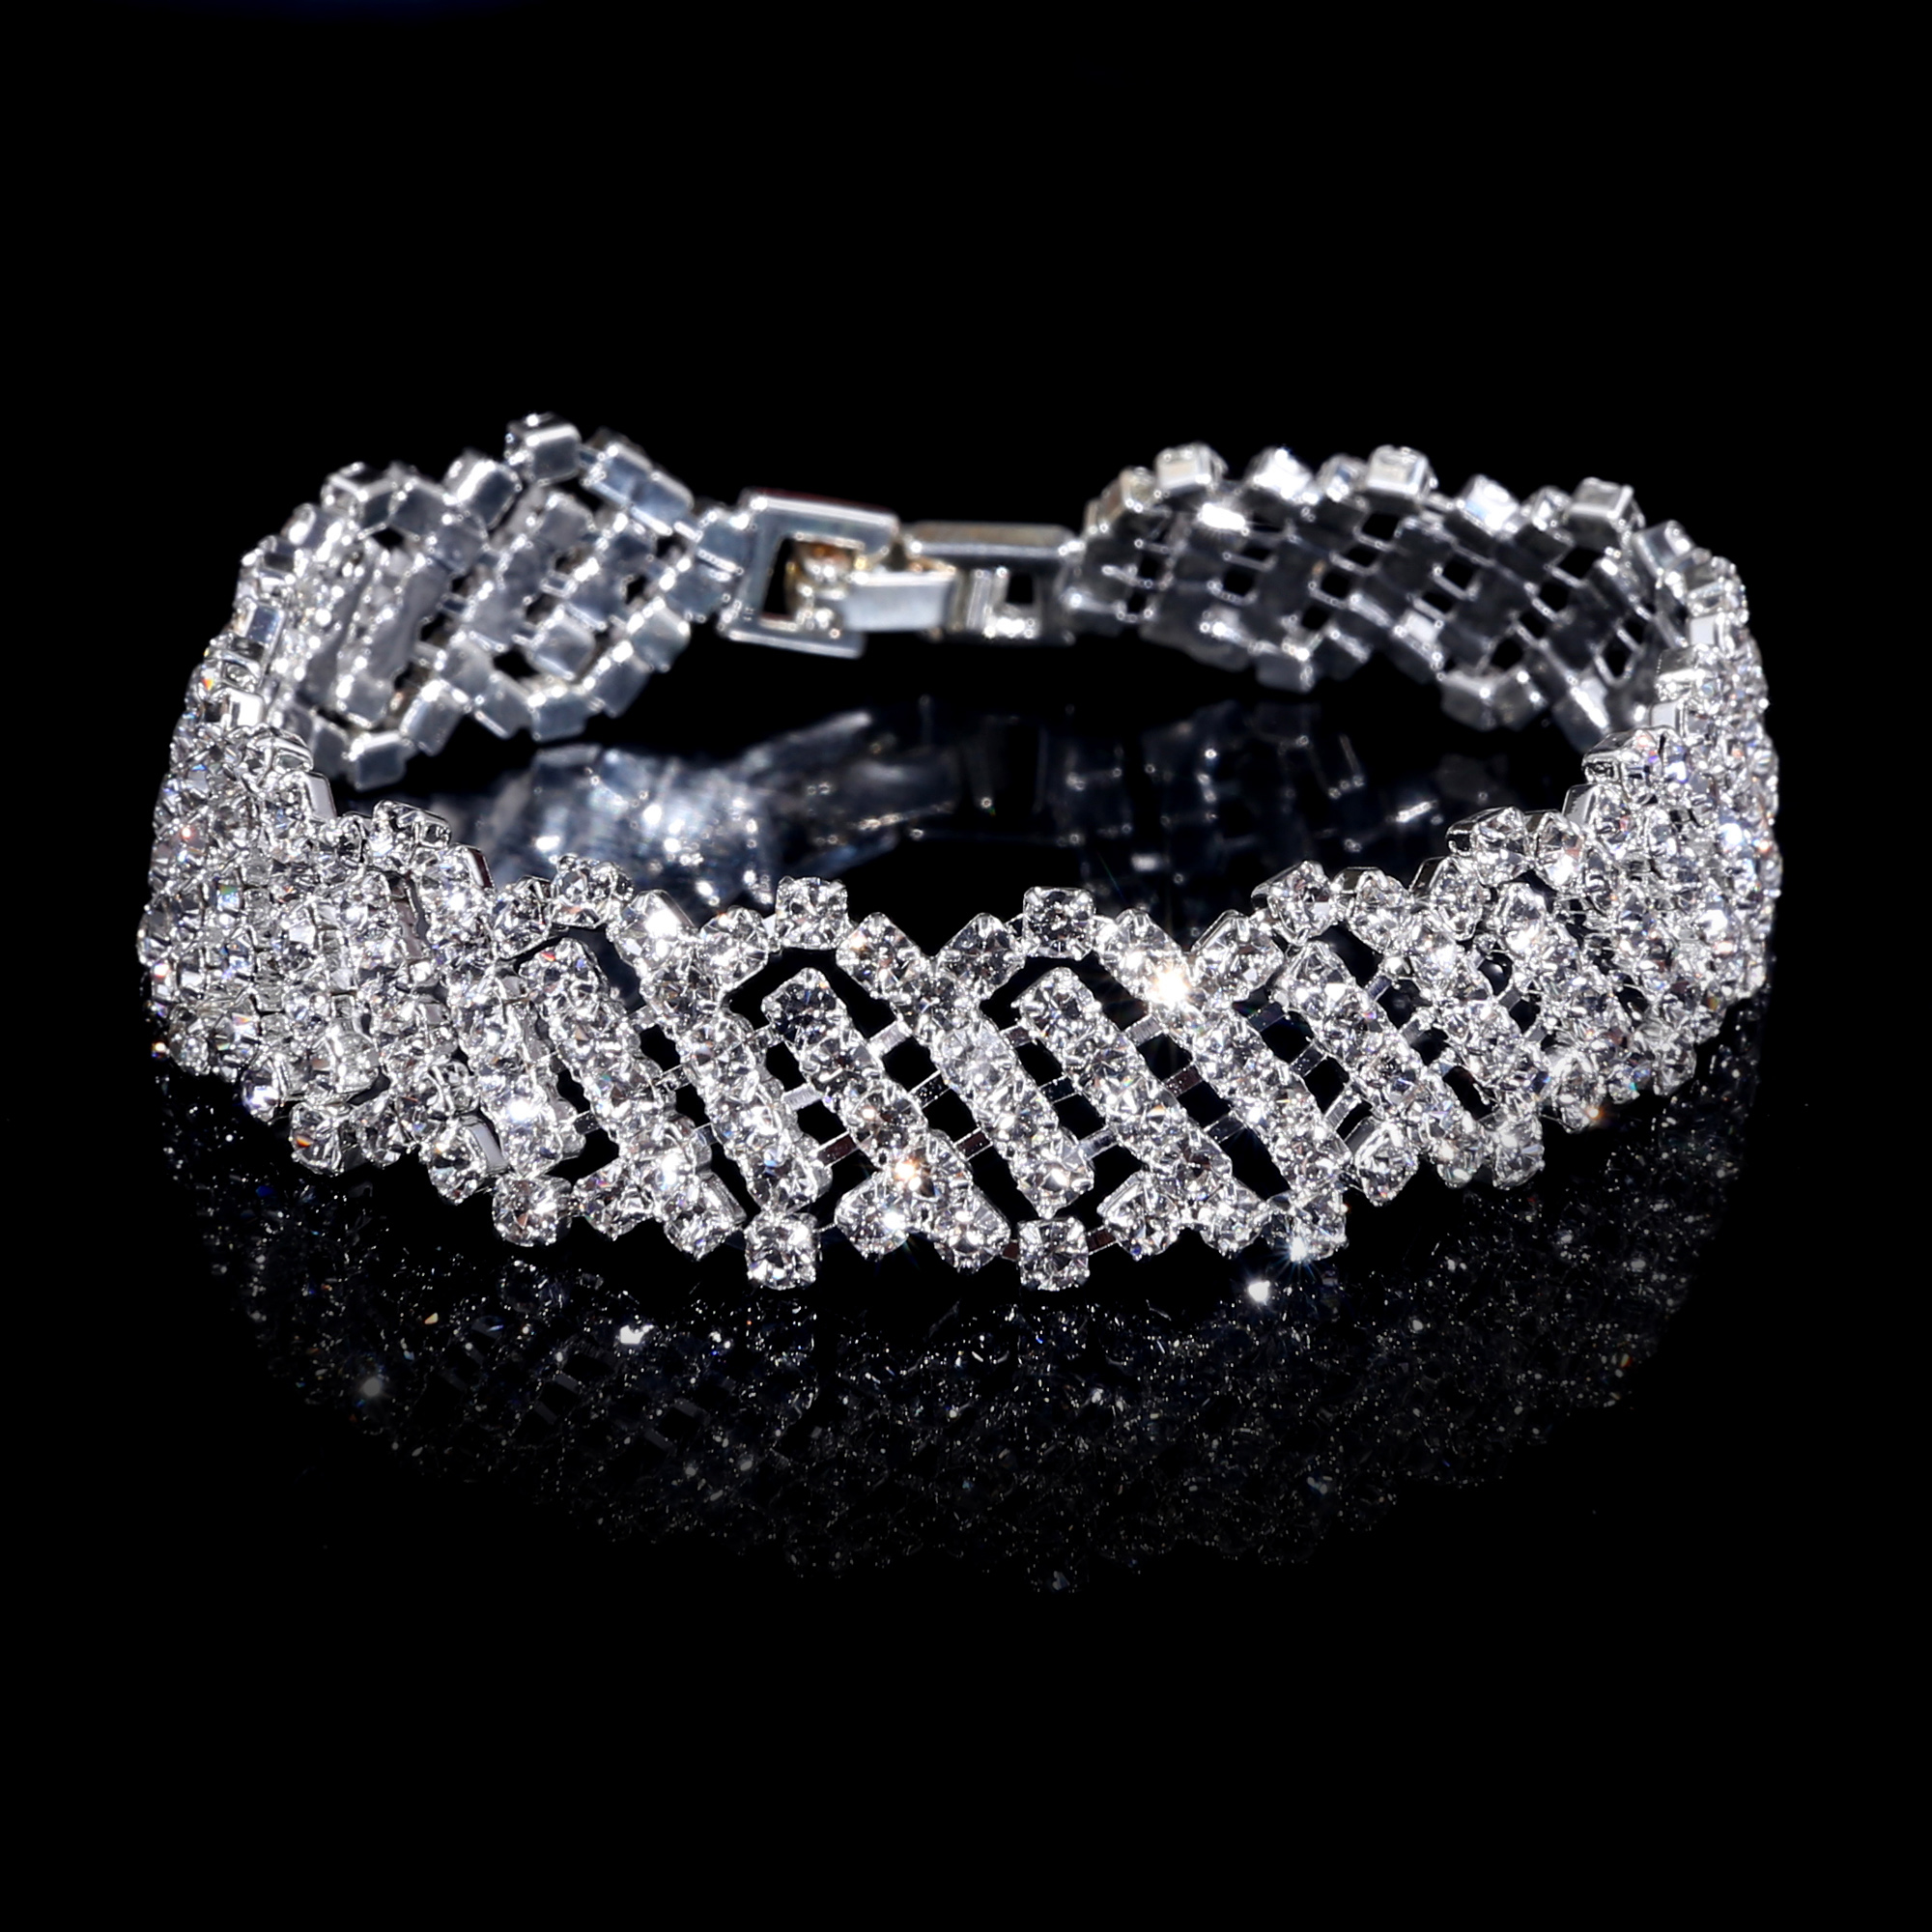 Shiny Silver Wedding Engagement Bangle Bracelet Cuff Crystal Rhinestone ...